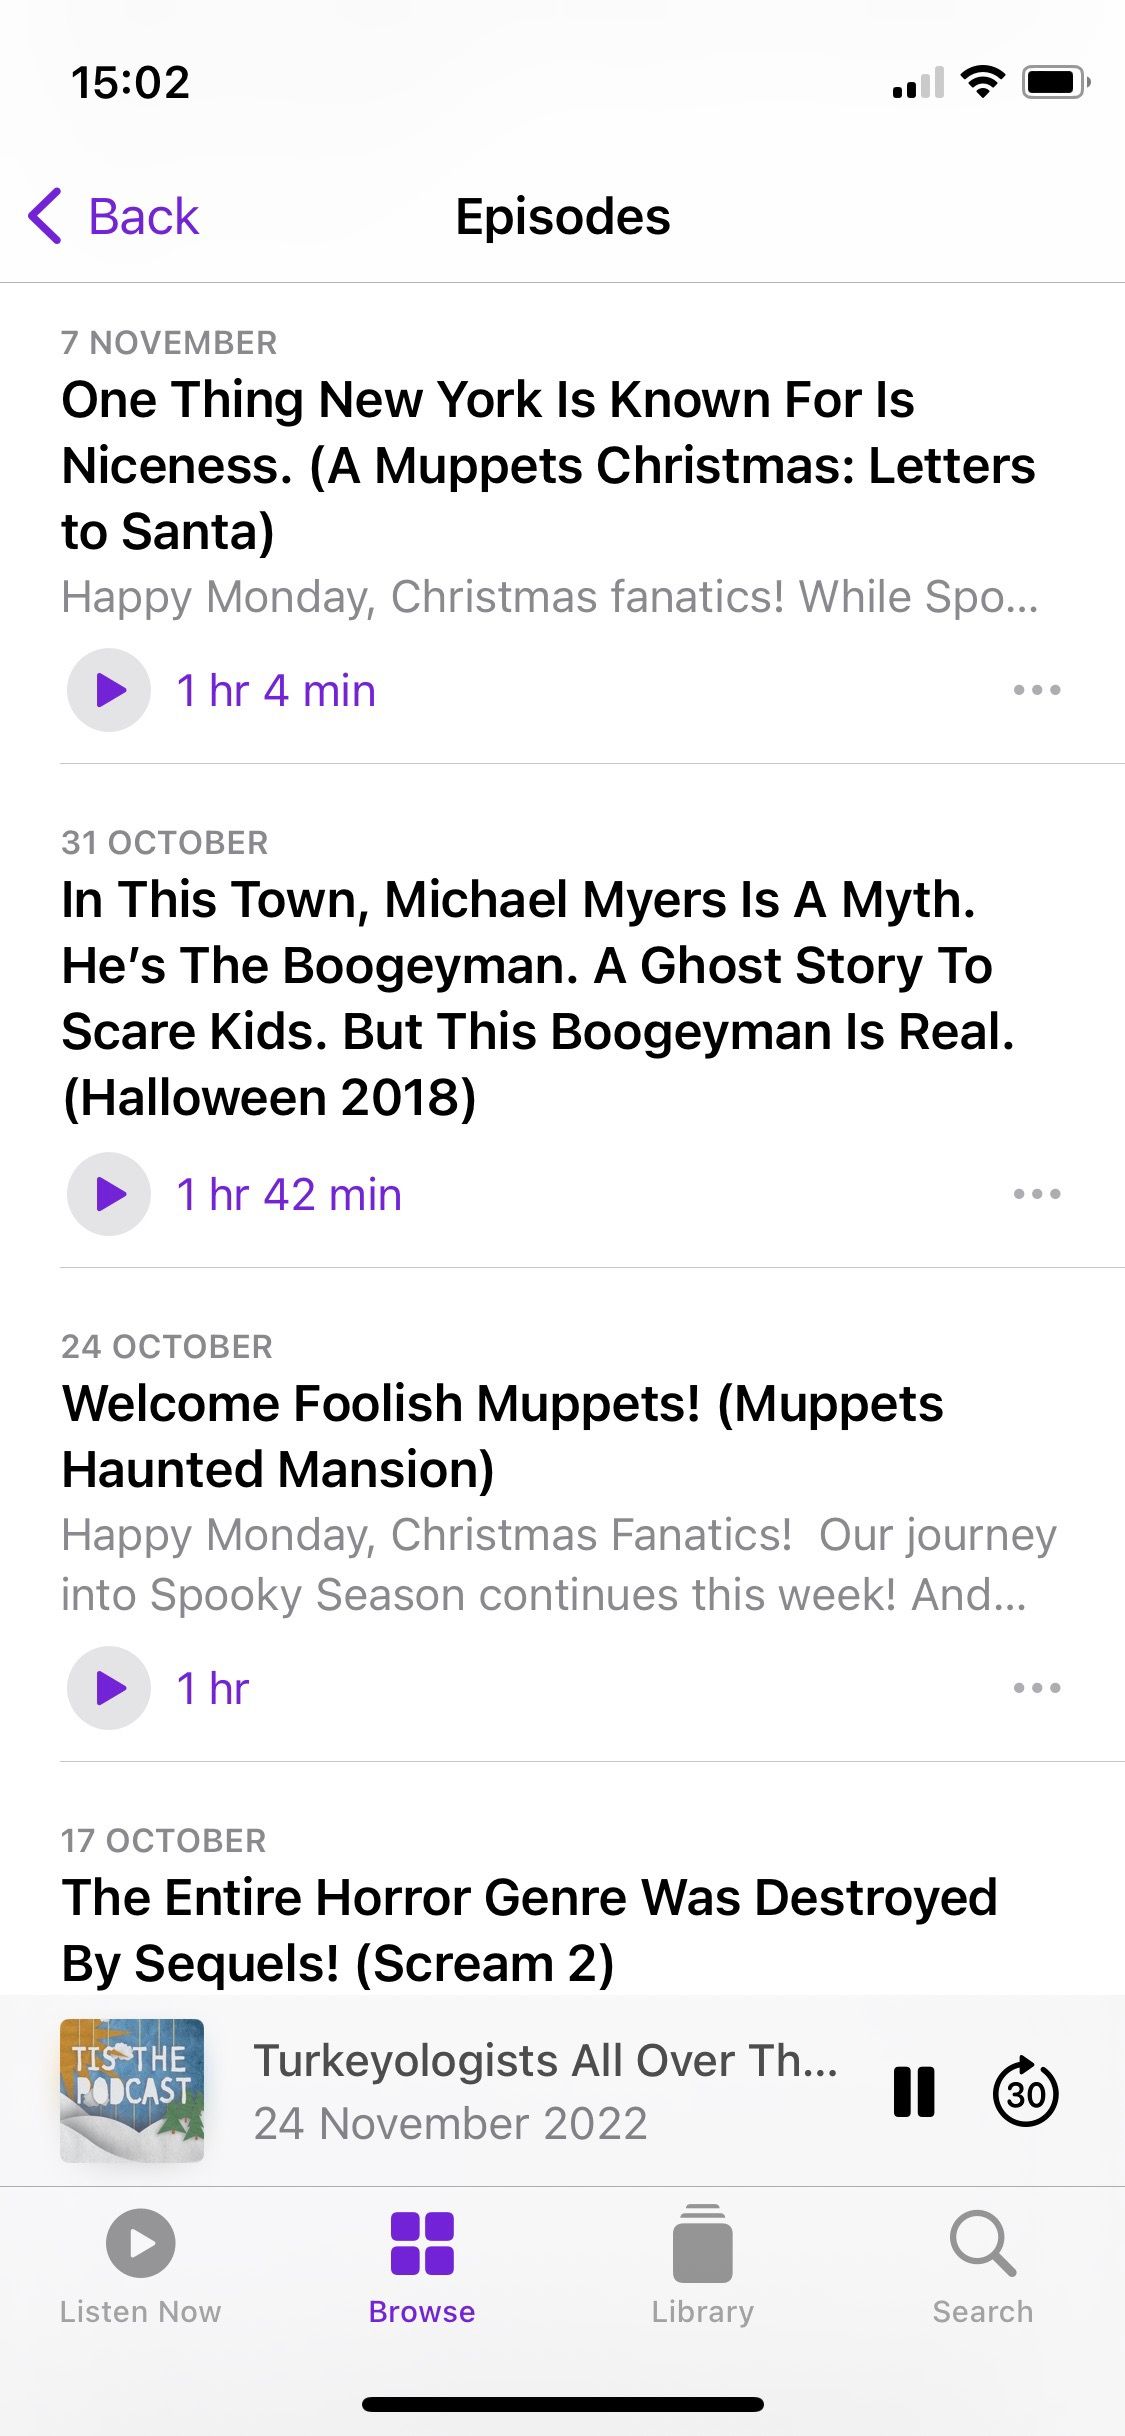 Capture d'écran de Tis the Podcast montrant la liste des épisodes